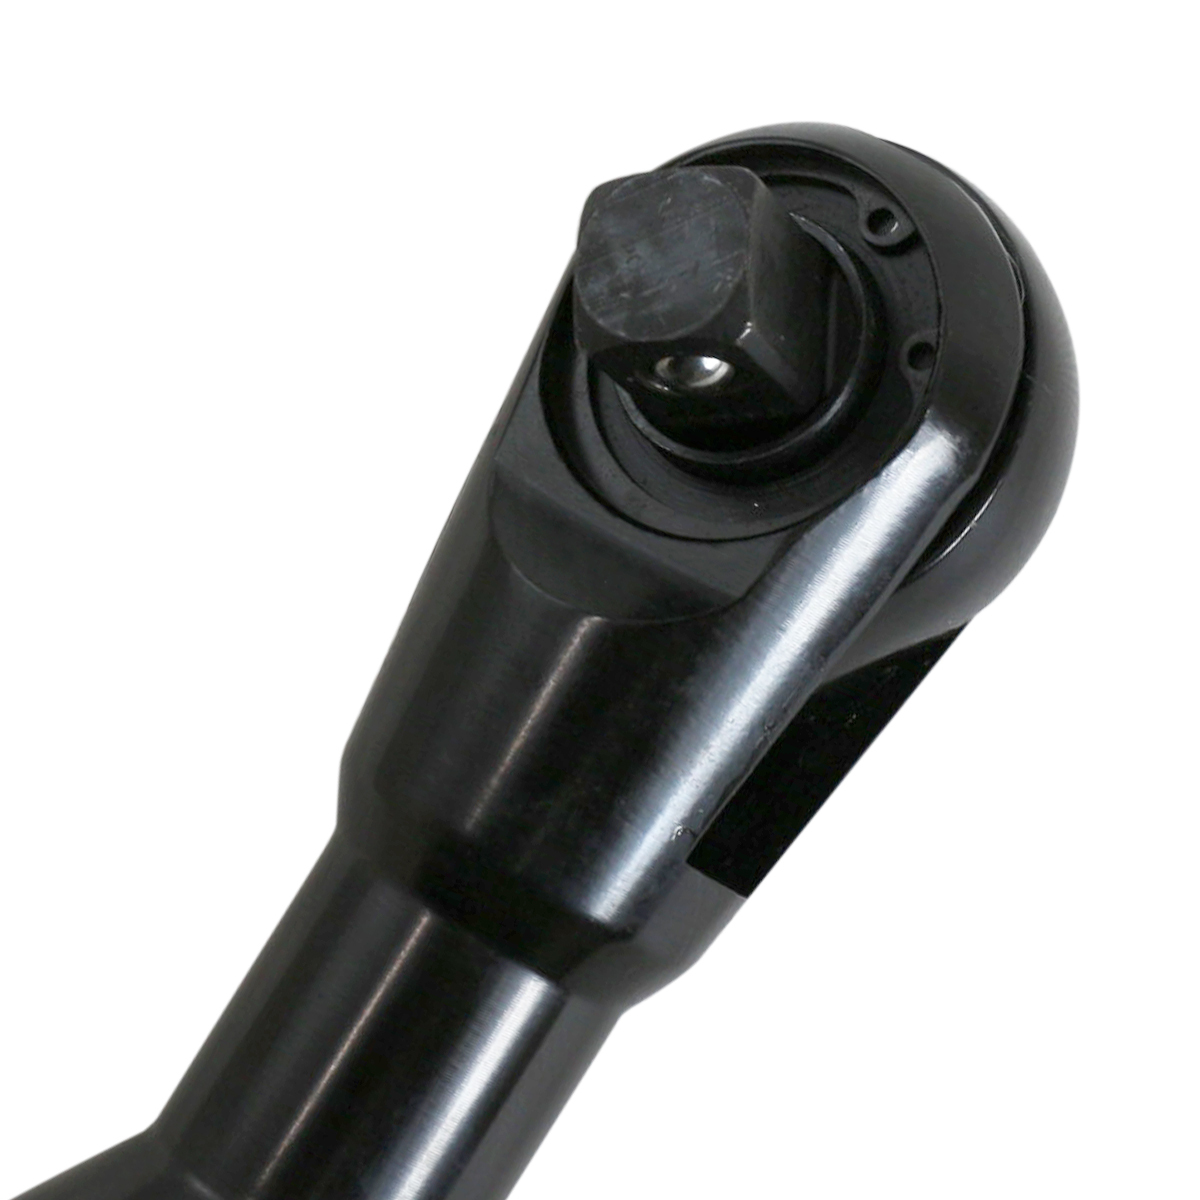  воздушный трещоточный гаечный ключ максимальный крутящий момент 82Nm разница включено угол 1/2 (12.7mm) мощный пневматический инструмент воздушный трещоточный гаечный ключ инструмент воздушный 